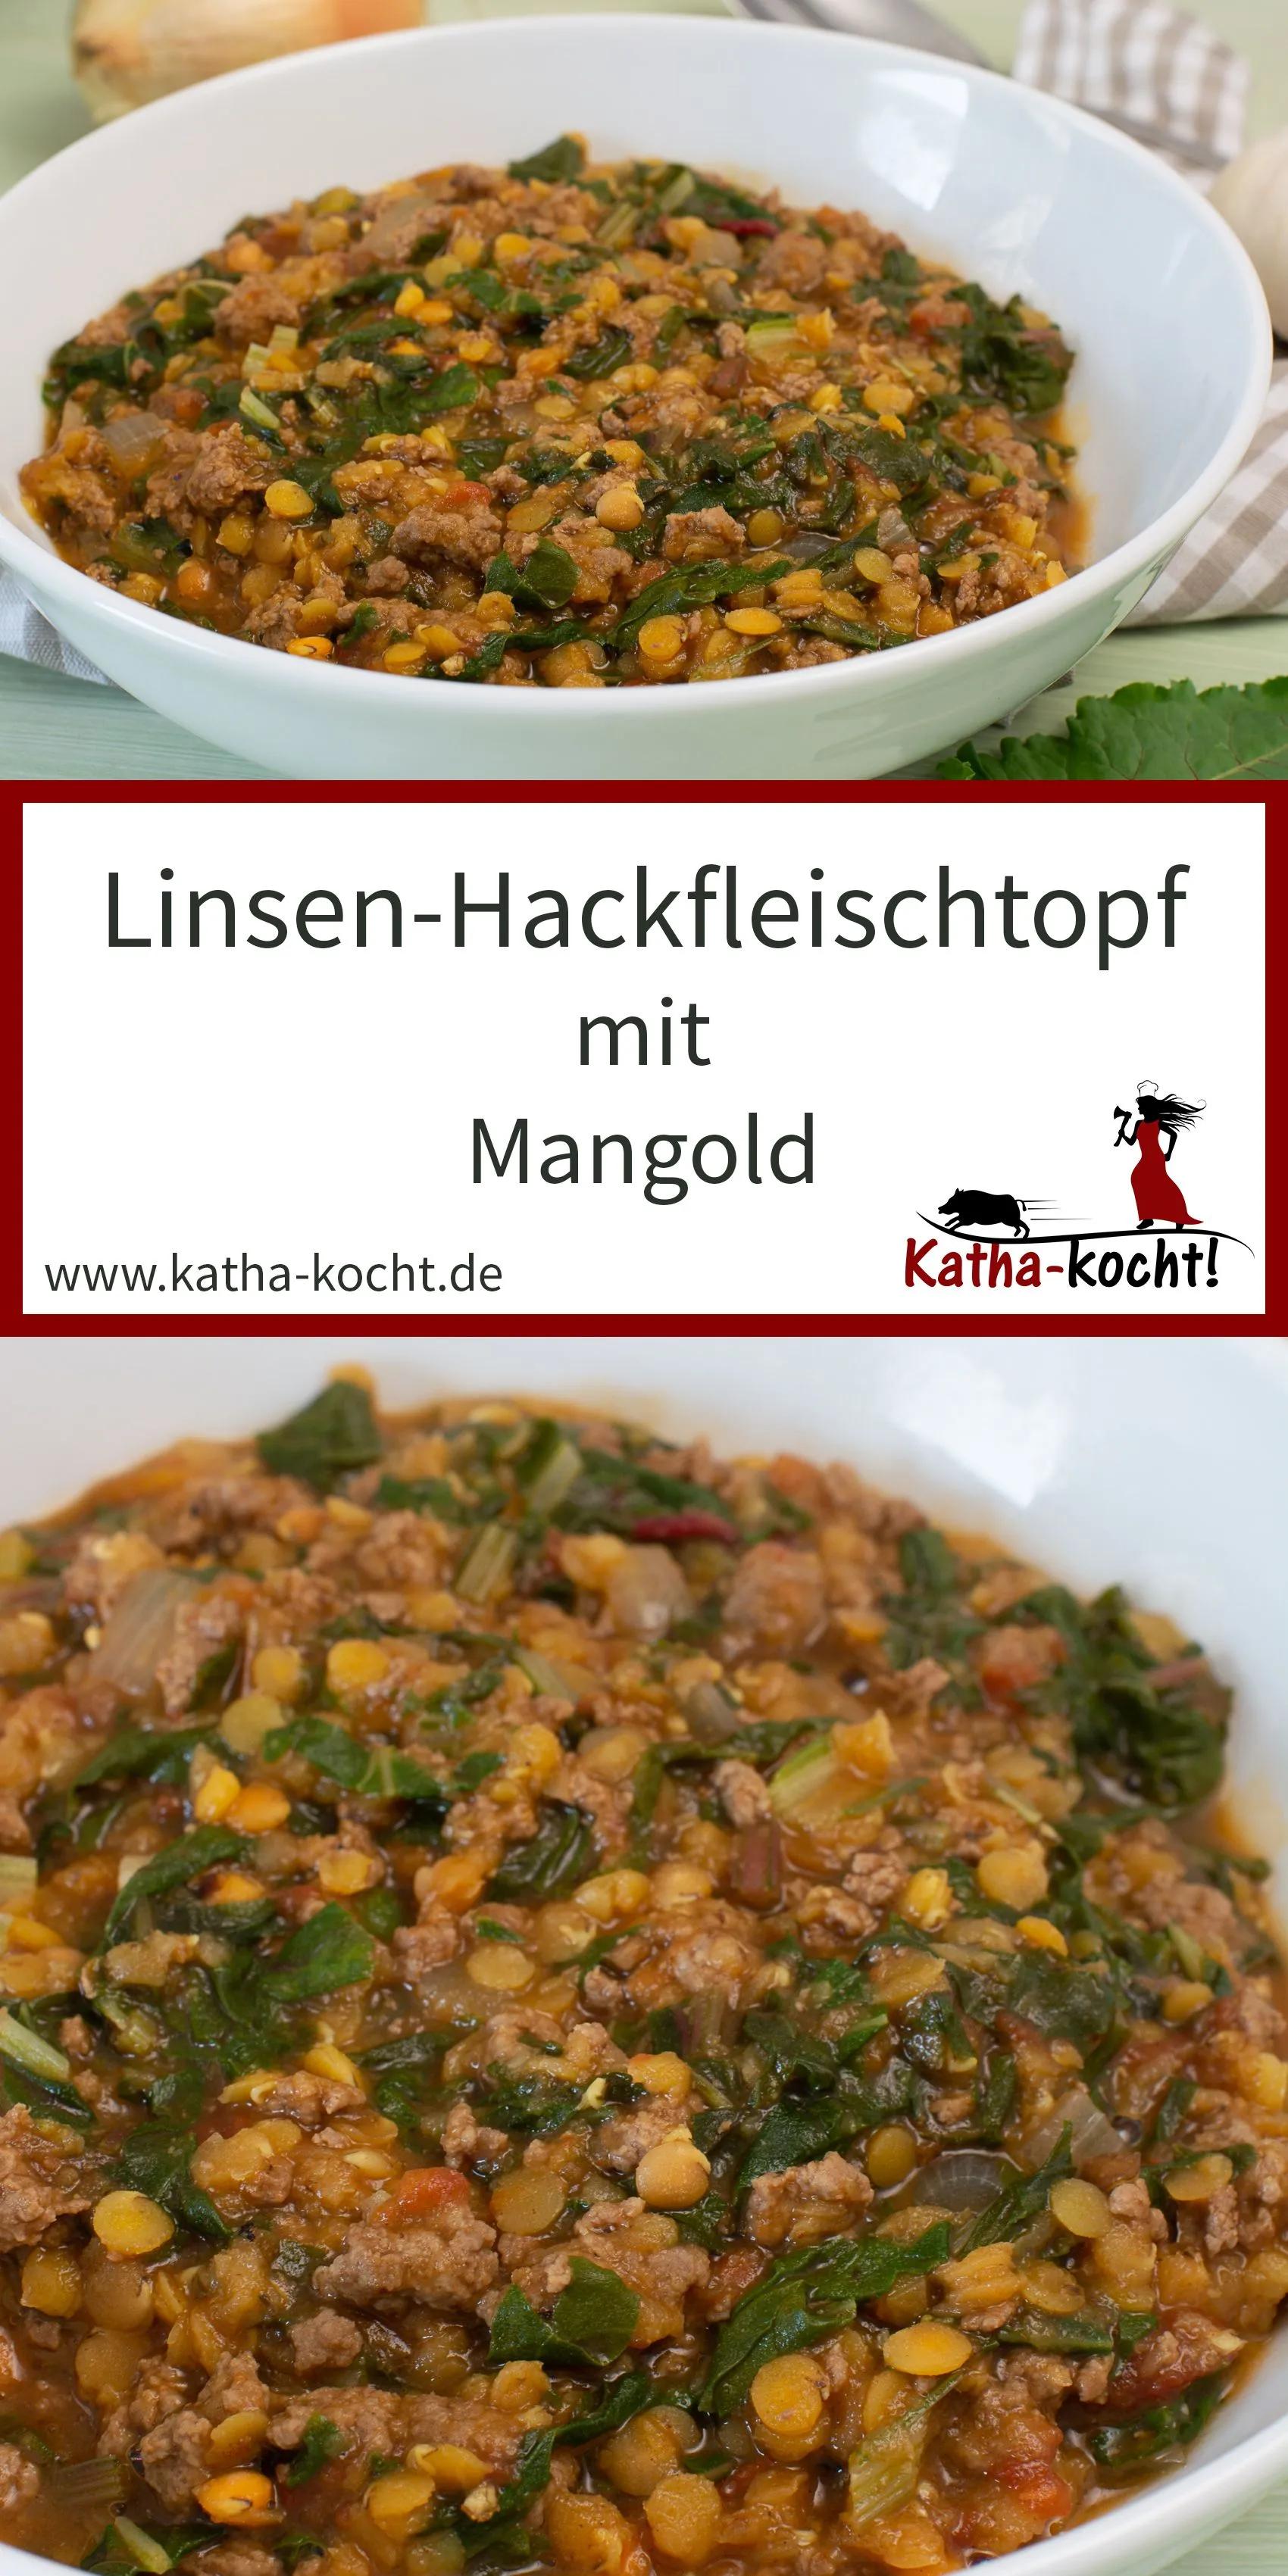 Linsen-Hackfleischtopf mit Mangold - Katha-kocht! | Internationale ...